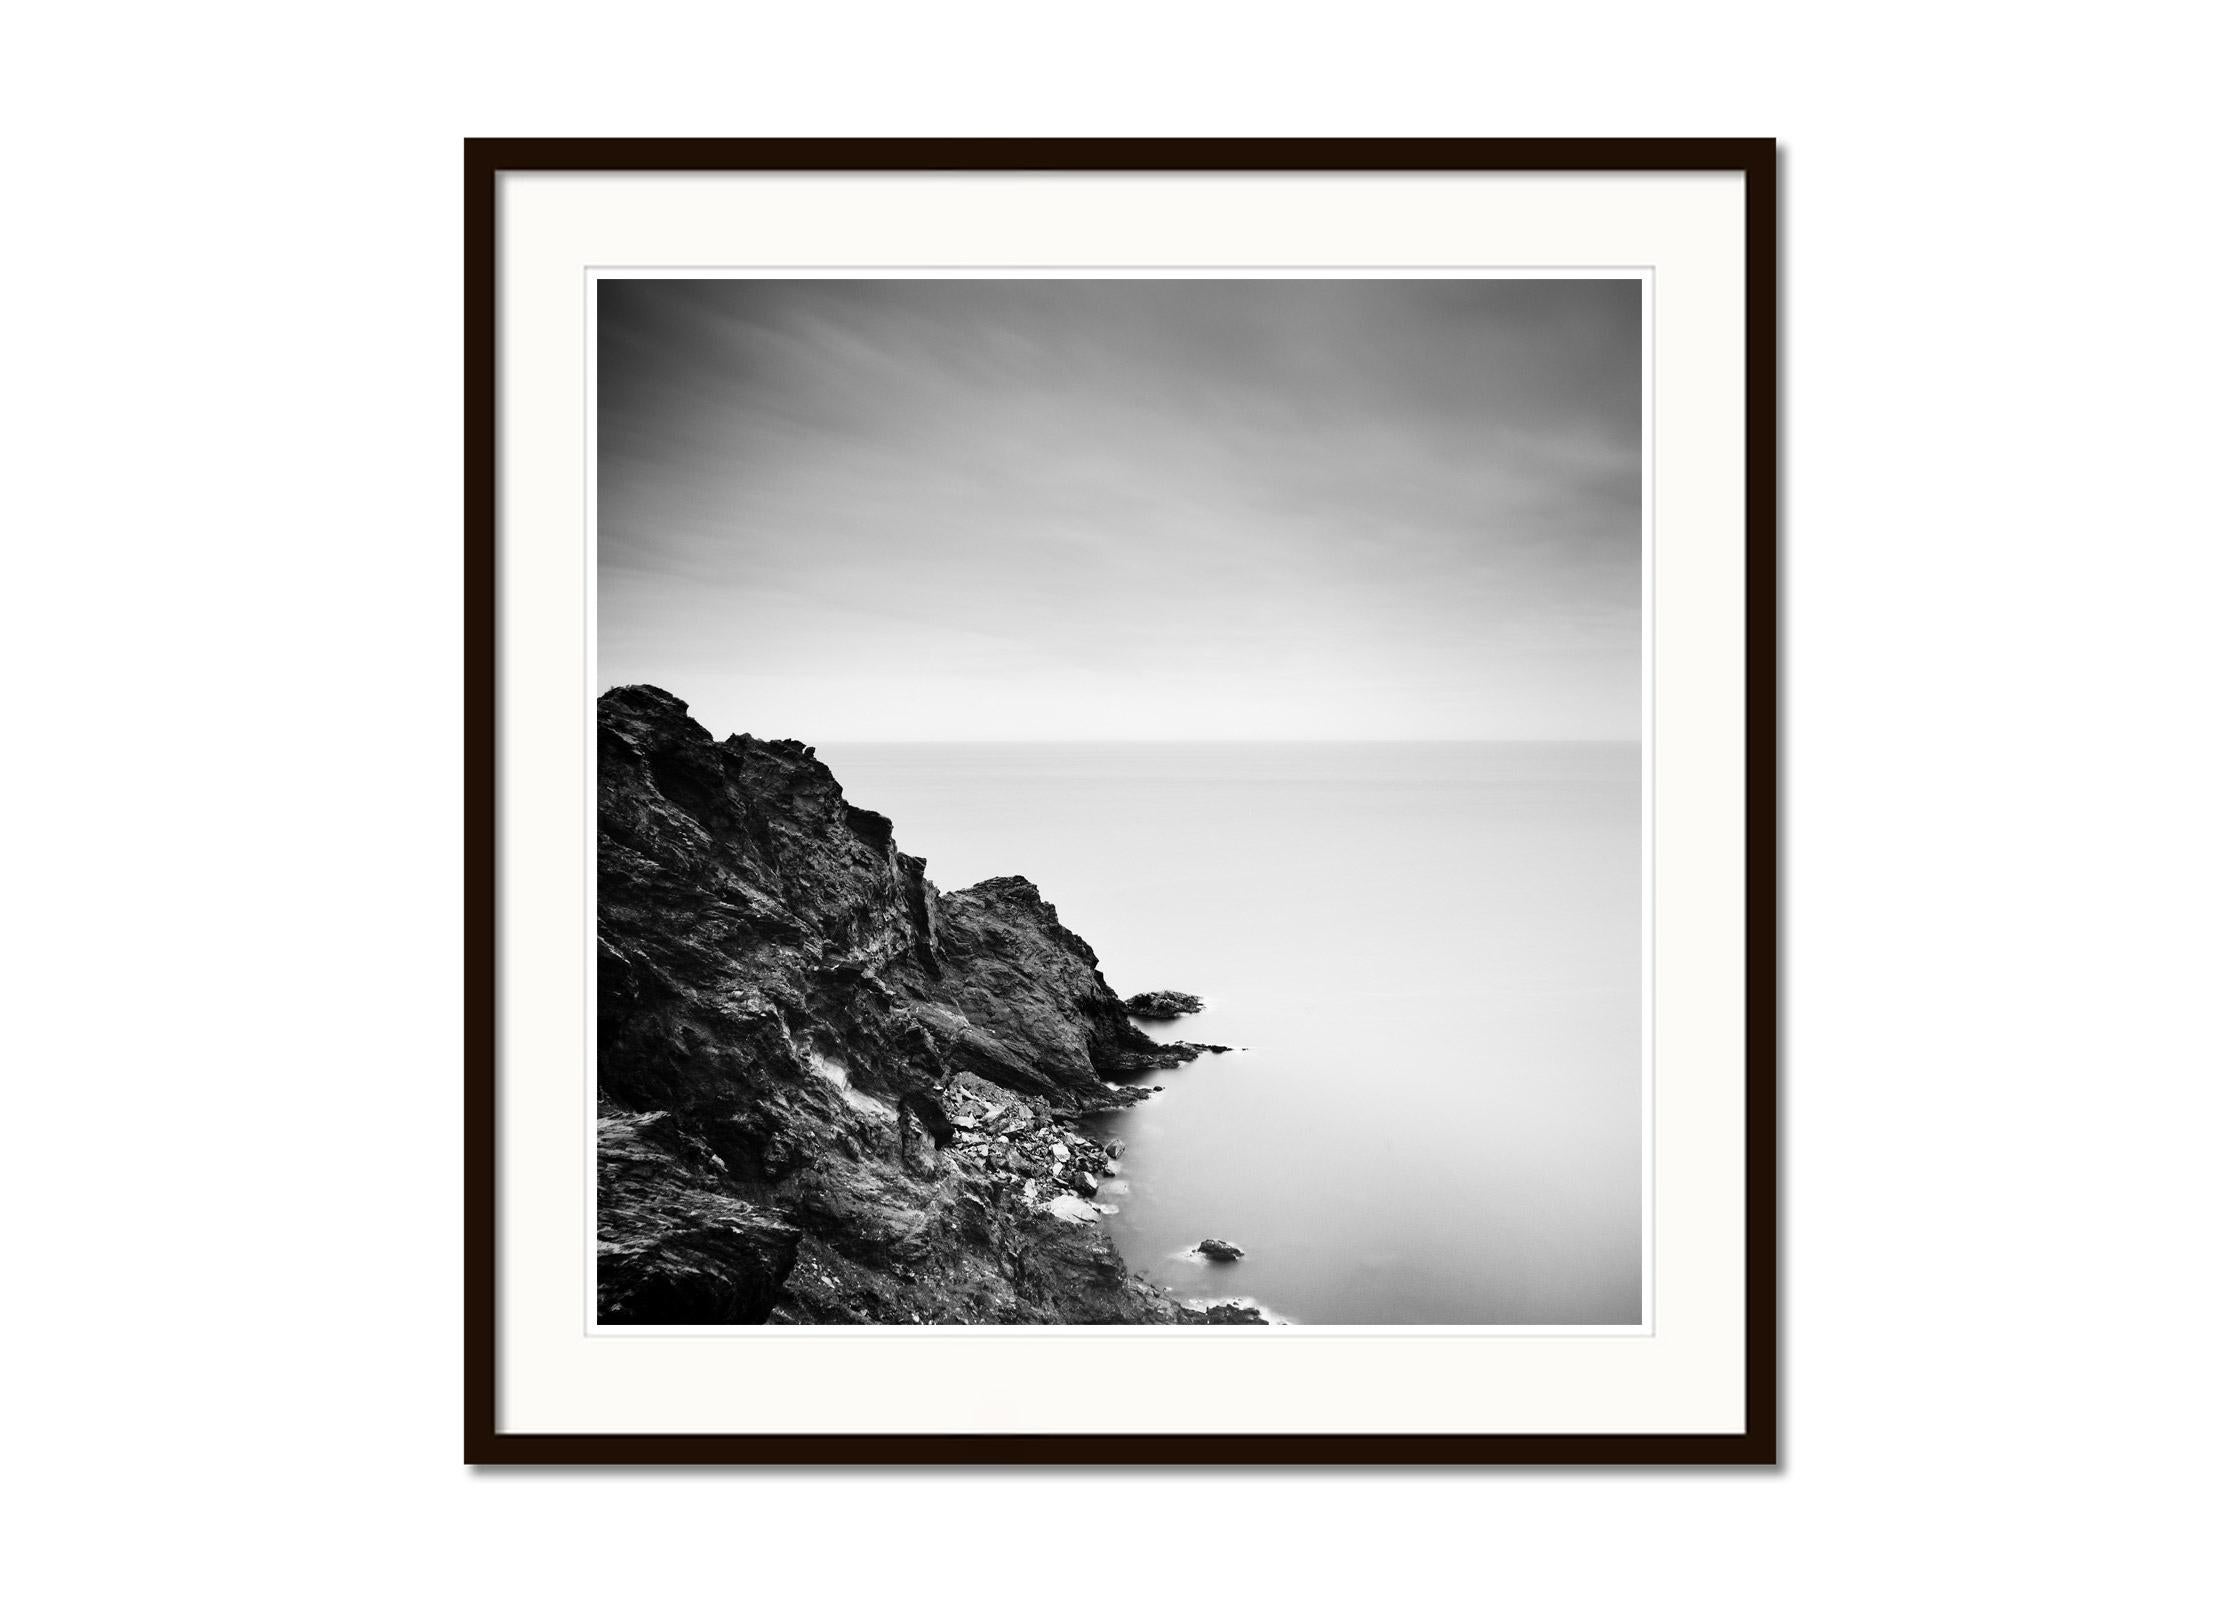 Atlantic Coast, Cliff, Portugal, Schwarz-Weiß-Fotografie, Kunstlandschaft (Grau), Still-Life Photograph, von Gerald Berghammer, Ina Forstinger